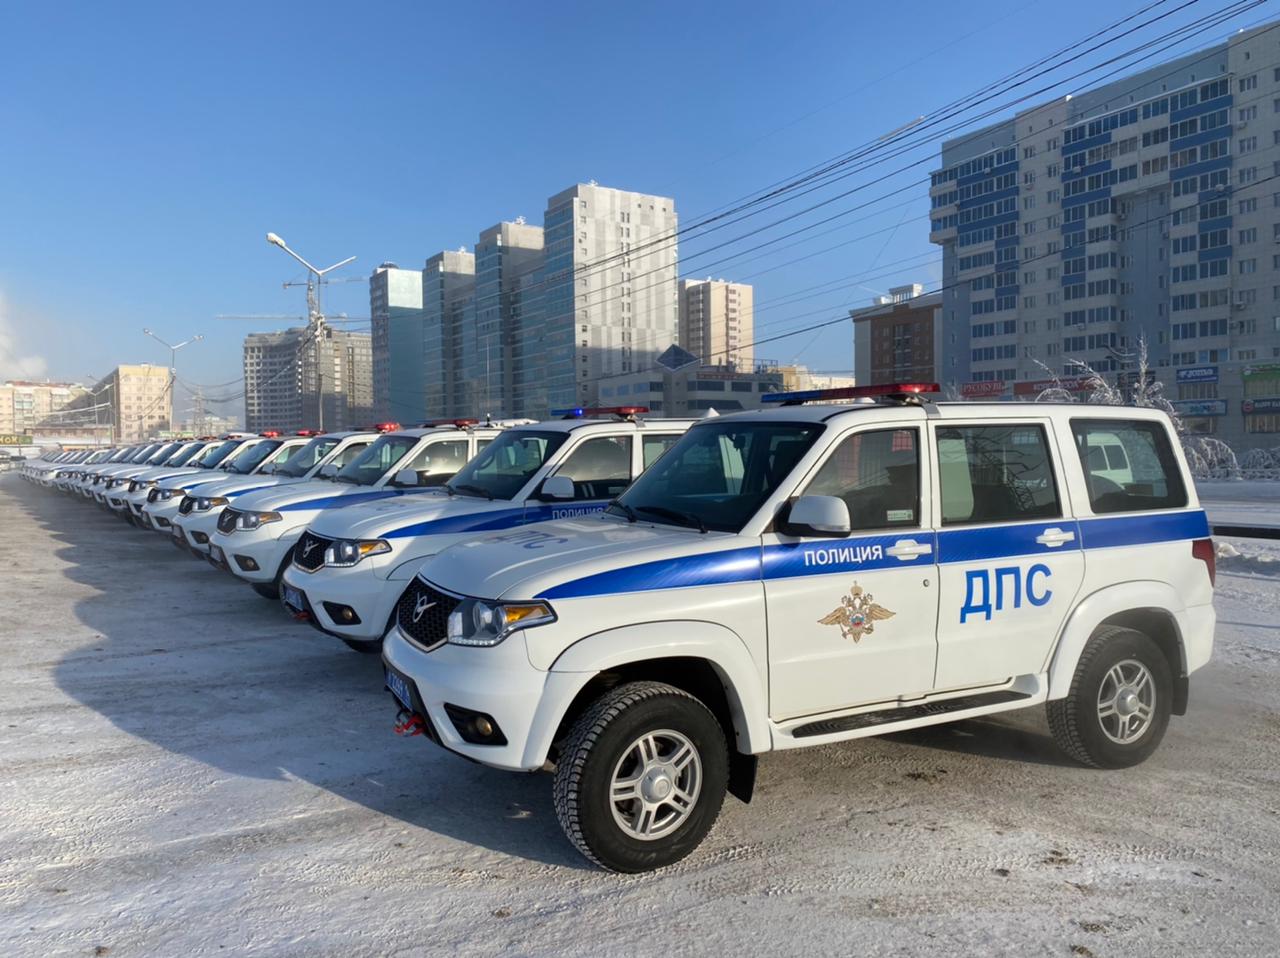 ВИДЕО. Глава Якутии вручил ключи от новых служебных автомобилей «УАЗ Патриот» сотрудникам Госавтоинспекции